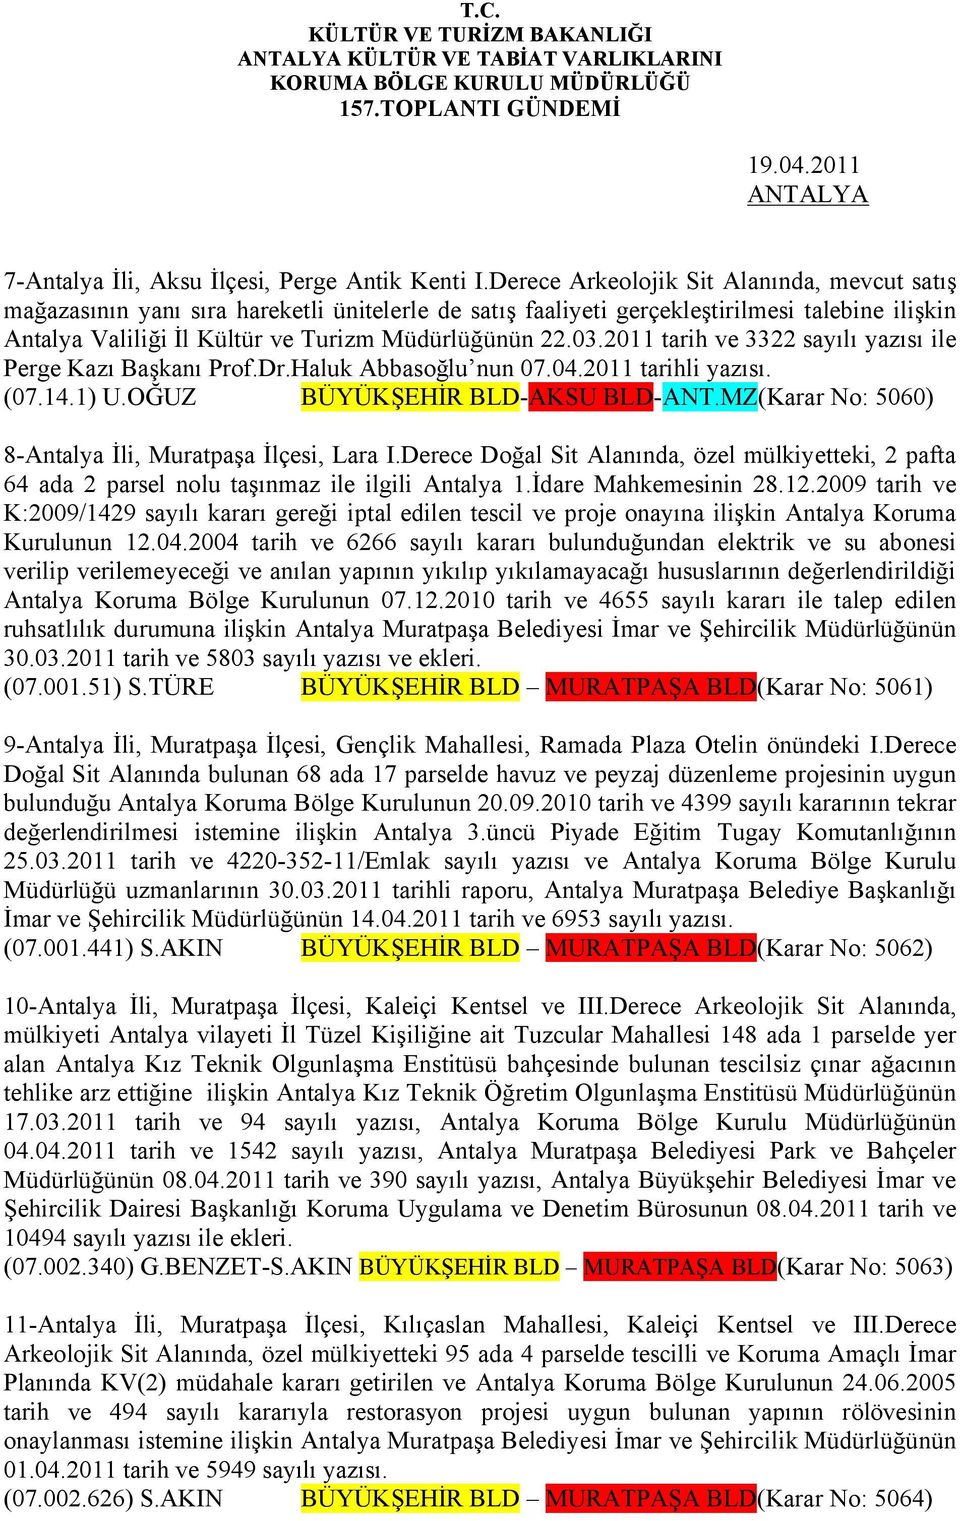 2011 tarih ve 3322 sayılı yazısı ile Perge Kazı Başkanı Prof.Dr.Haluk Abbasoğlu nun 07.04.2011 tarihli yazısı. (07.14.1) U.OĞUZ BÜYÜKŞEHİR BLD-AKSU BLD-ANT.